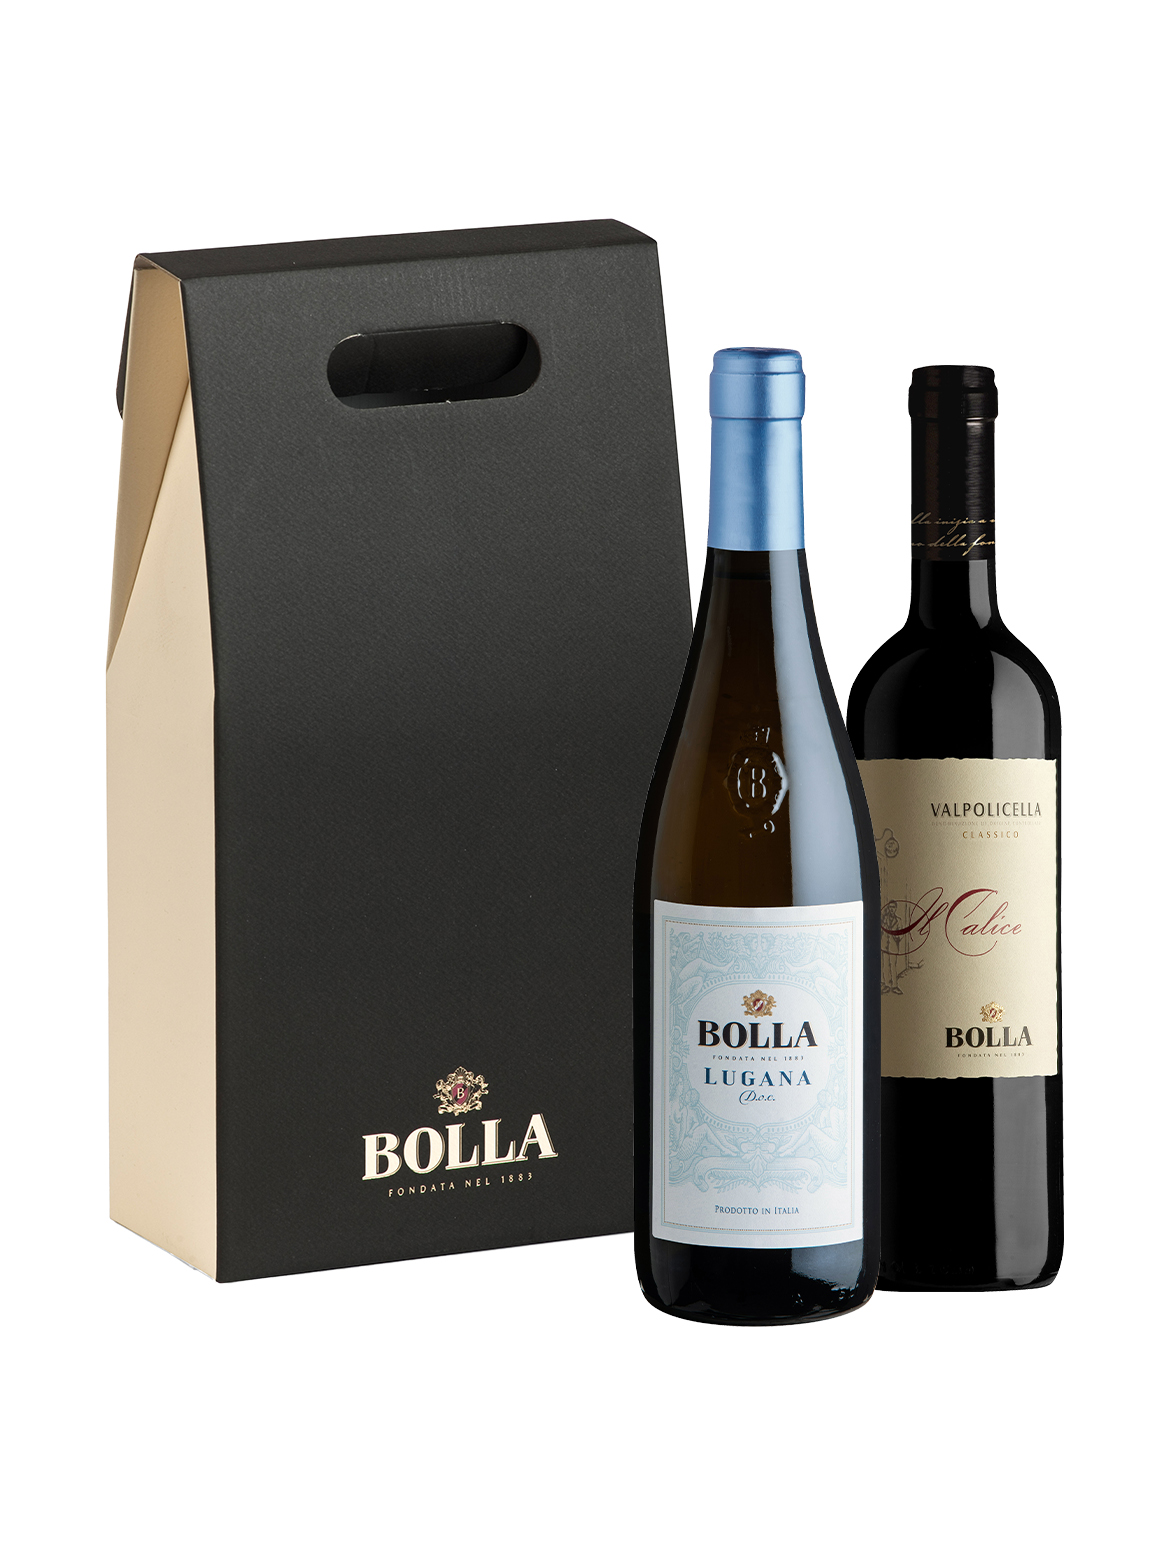 ASTUCCIO BOLLA - 2 bottiglie Lugana DOC e Il Calice Valpolicella Classico DOC